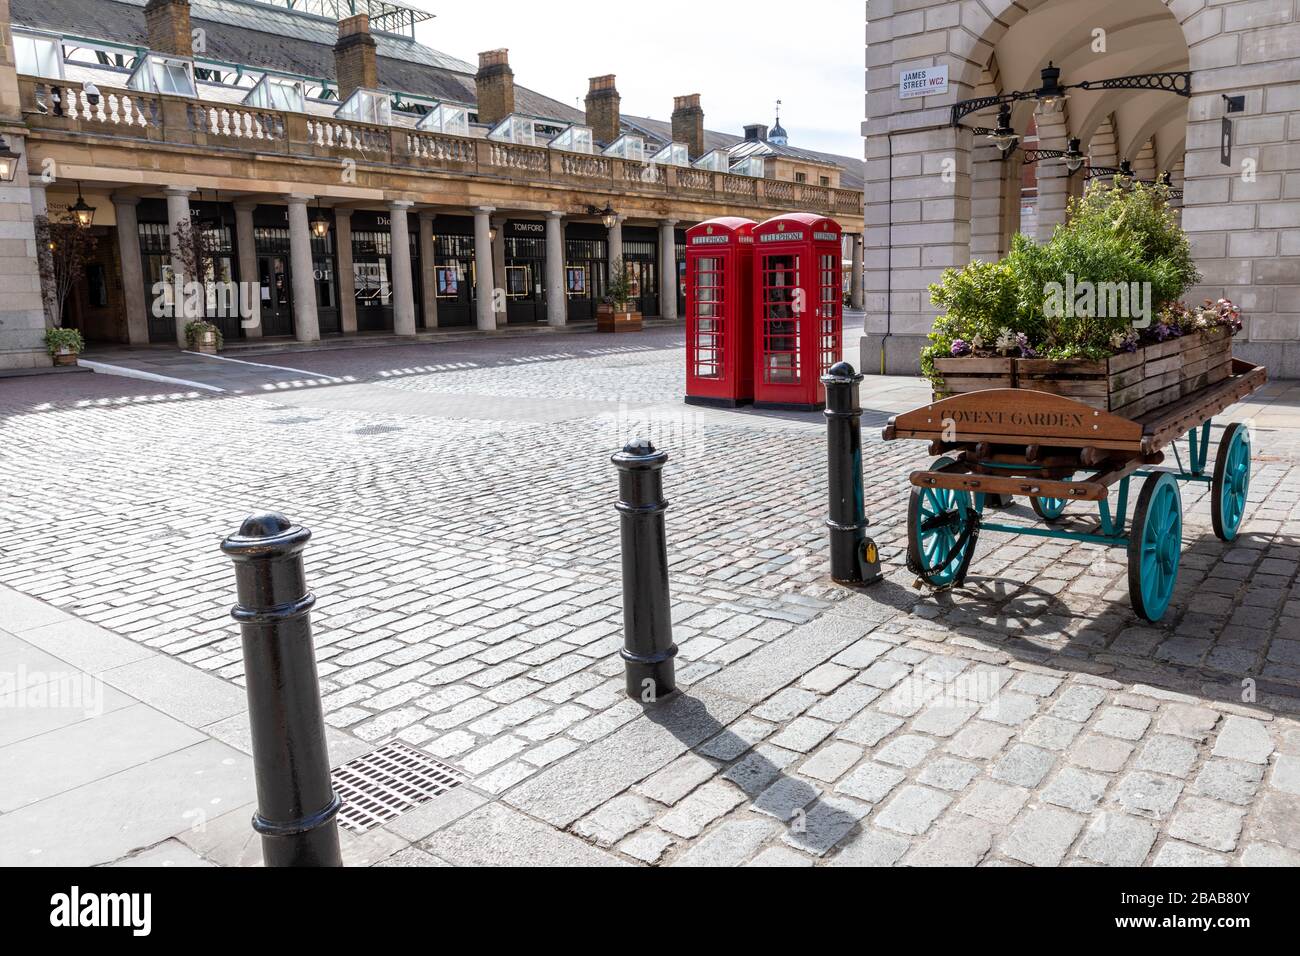 Londres - Angleterre - Covent Garden - 21032020 - les rues vides alors que le virus Corona frappe Londres forçant de nombreuses entreprises à fermer ou à fournir un service réduit - Photographe : Brian Duffy Banque D'Images